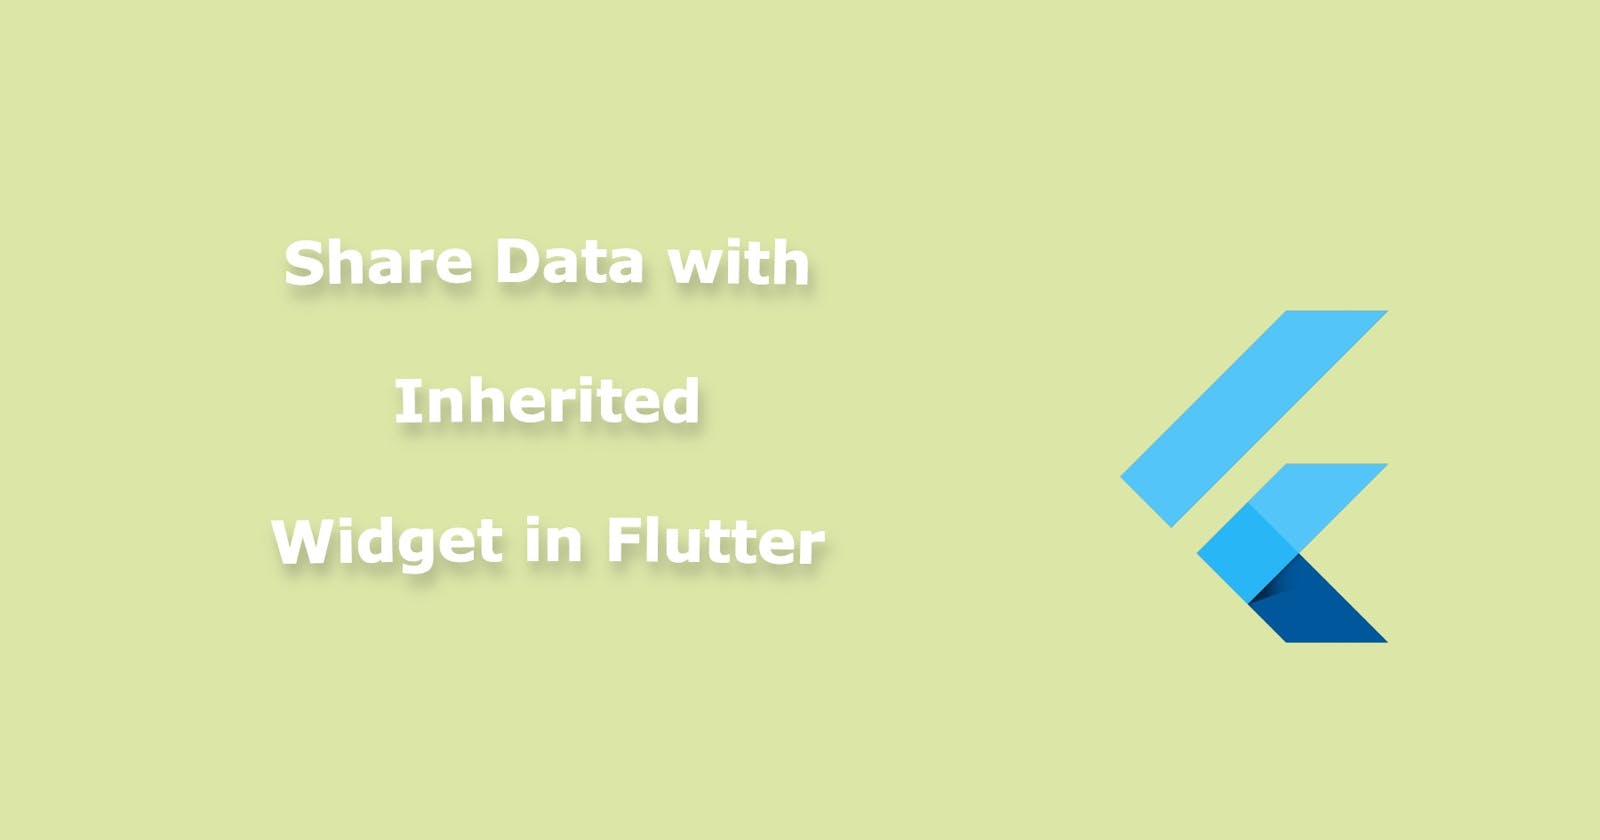 How to share data using Inherited Widget